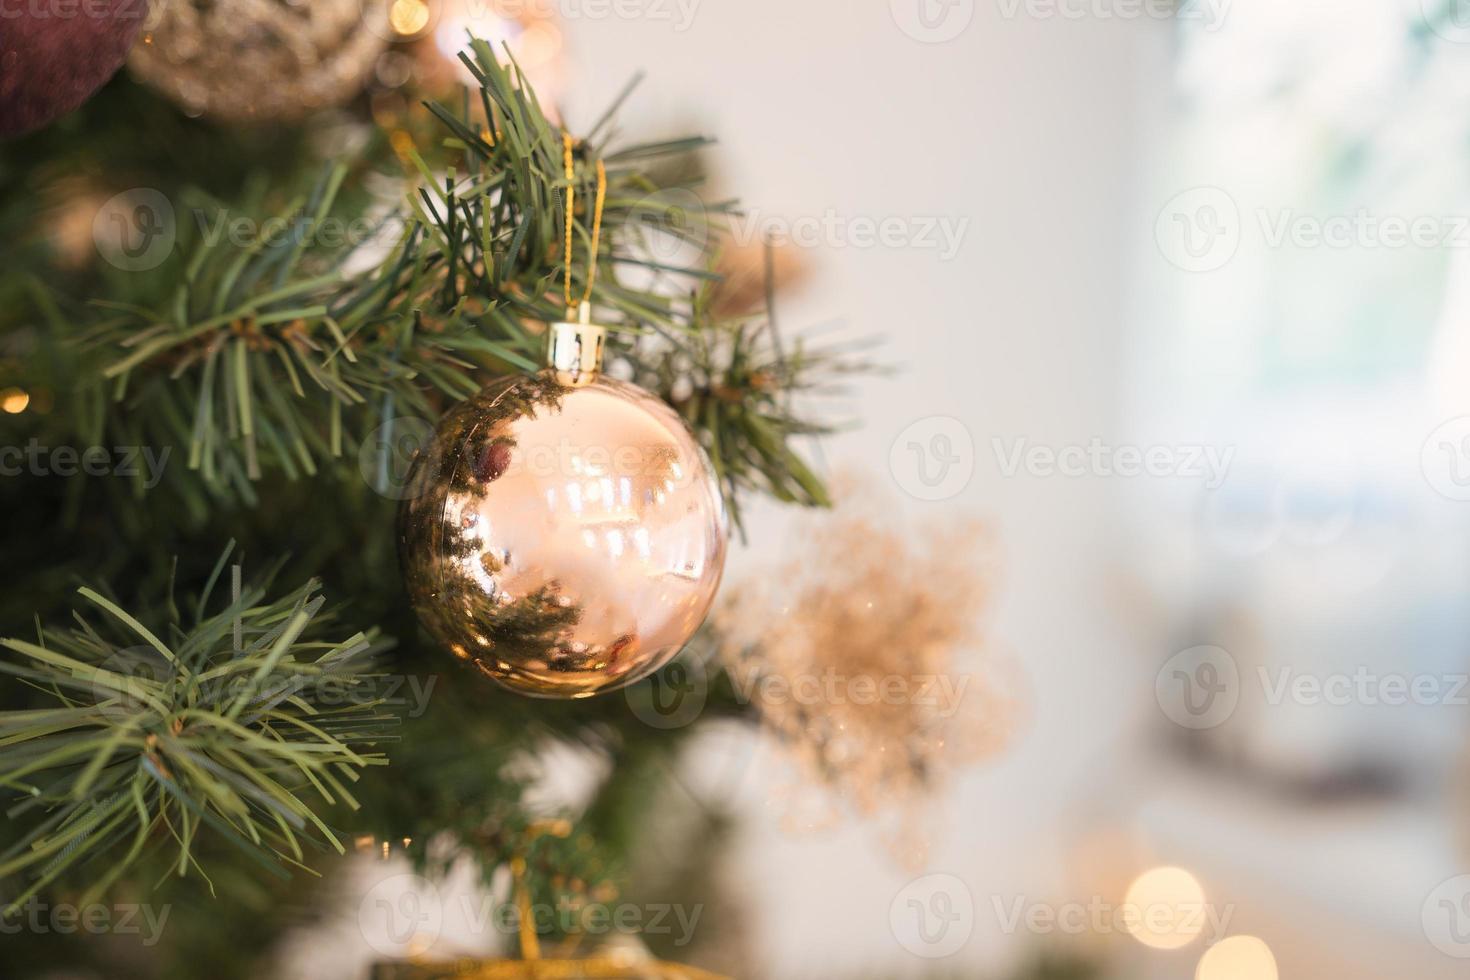 pino de navidad con bola dorada decorativa y adorno ornamental foto